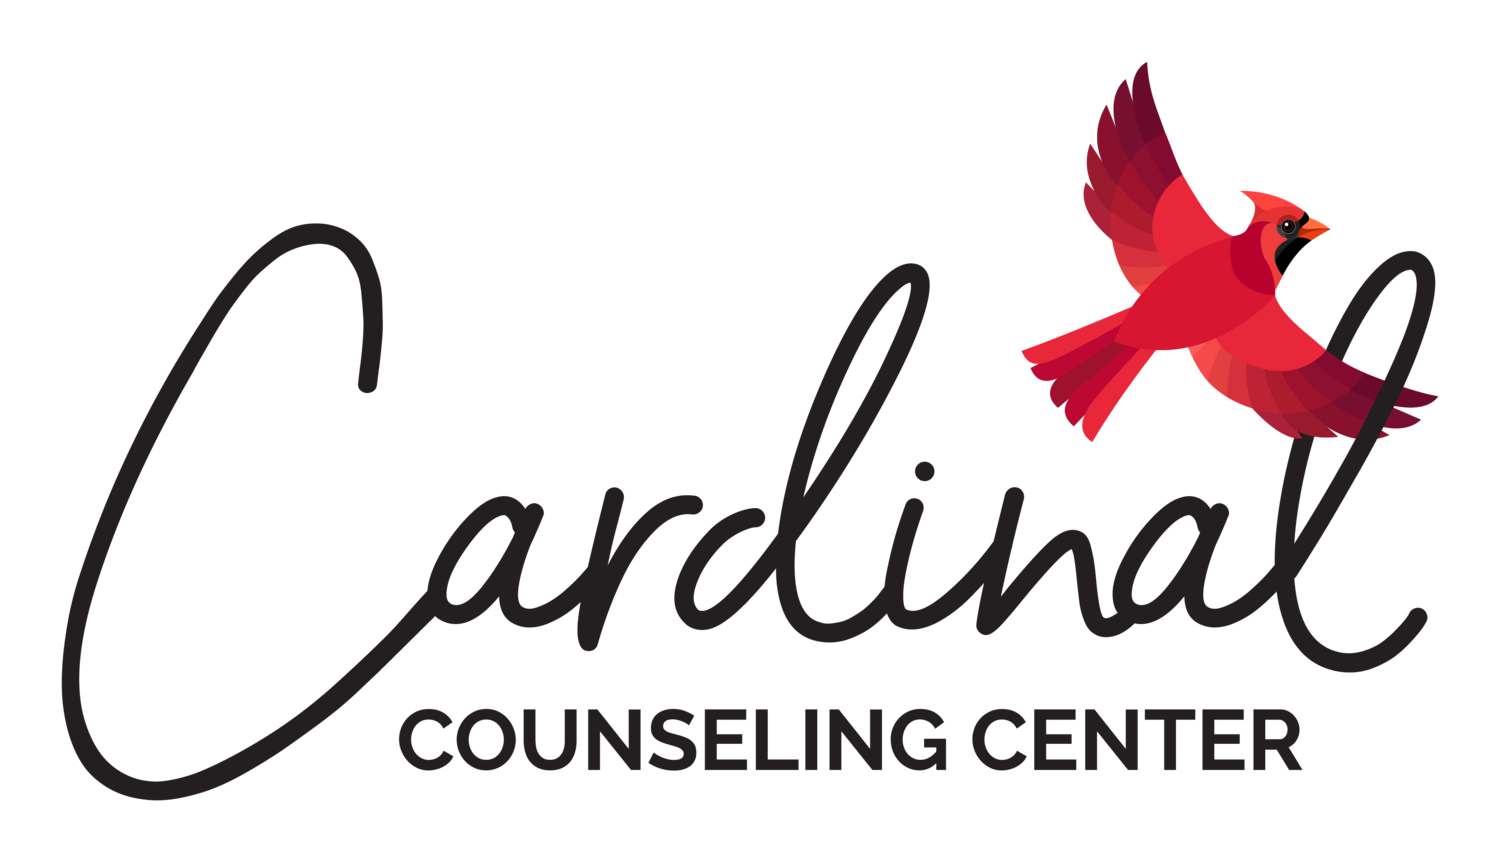 Cardinal Counseling Center